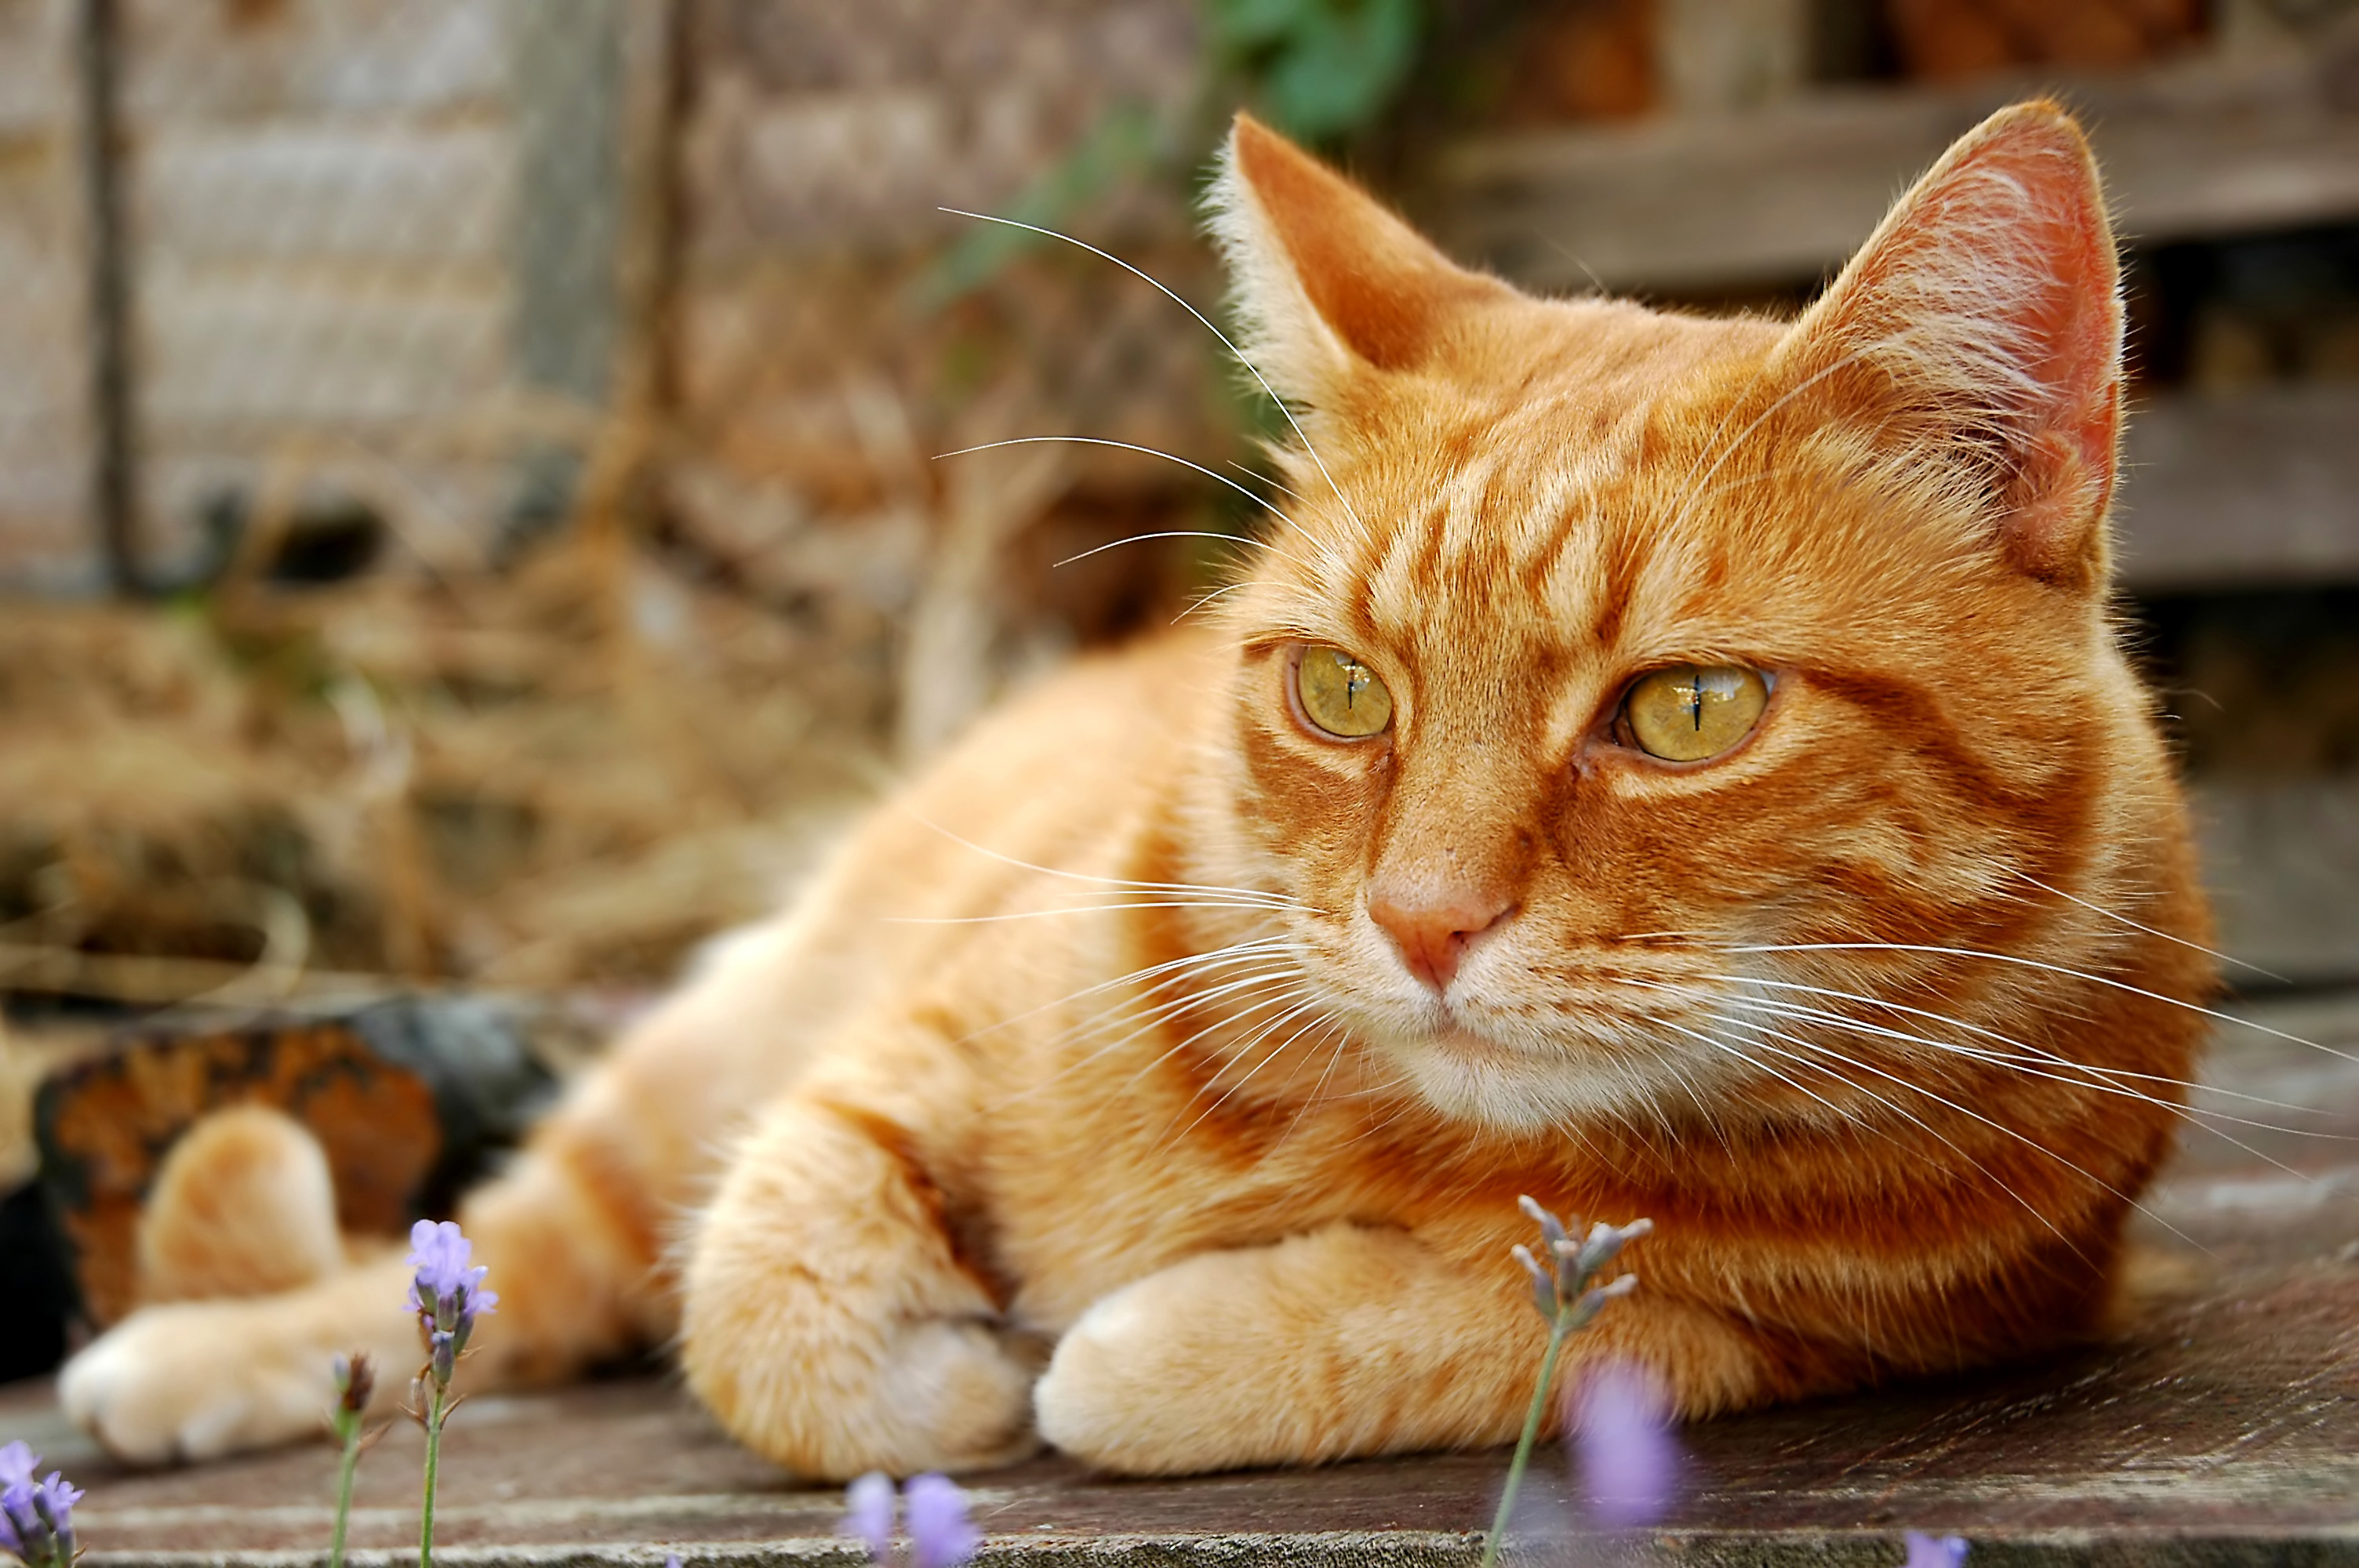 Типы рыжих кошек. Европейская короткошерстная кошка рыжая. Сибирская кошка рыжая короткошерстная. Макрелевый табби рыжий. Бразильская короткошерстная кошка рыжая цейлонская.